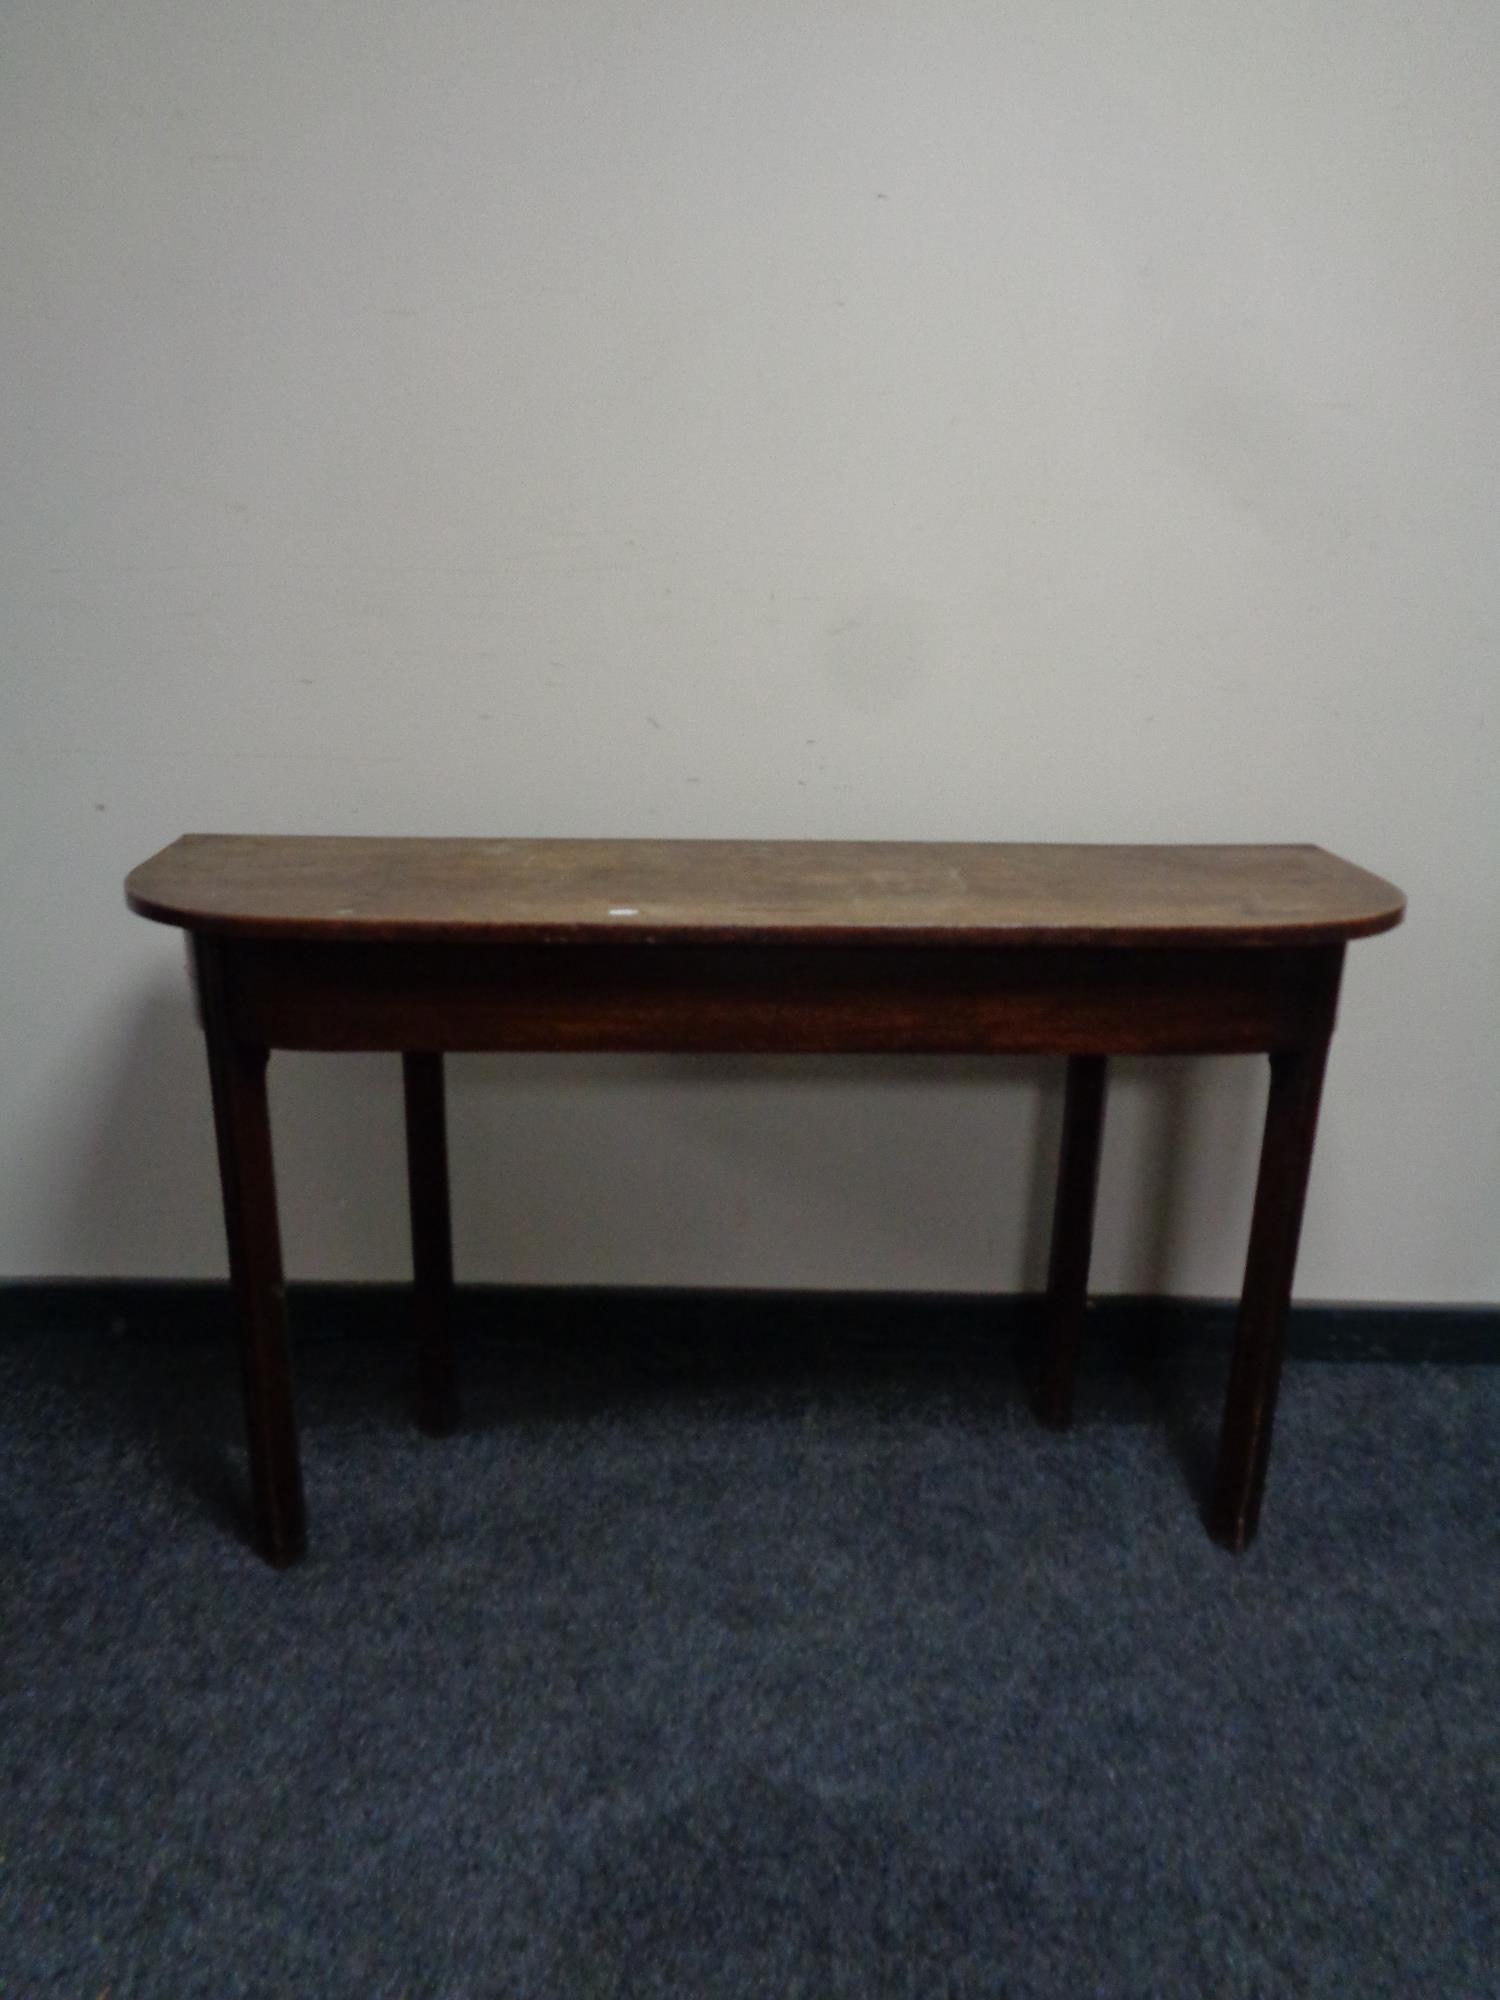 A 19th century mahogany D-shaped side table